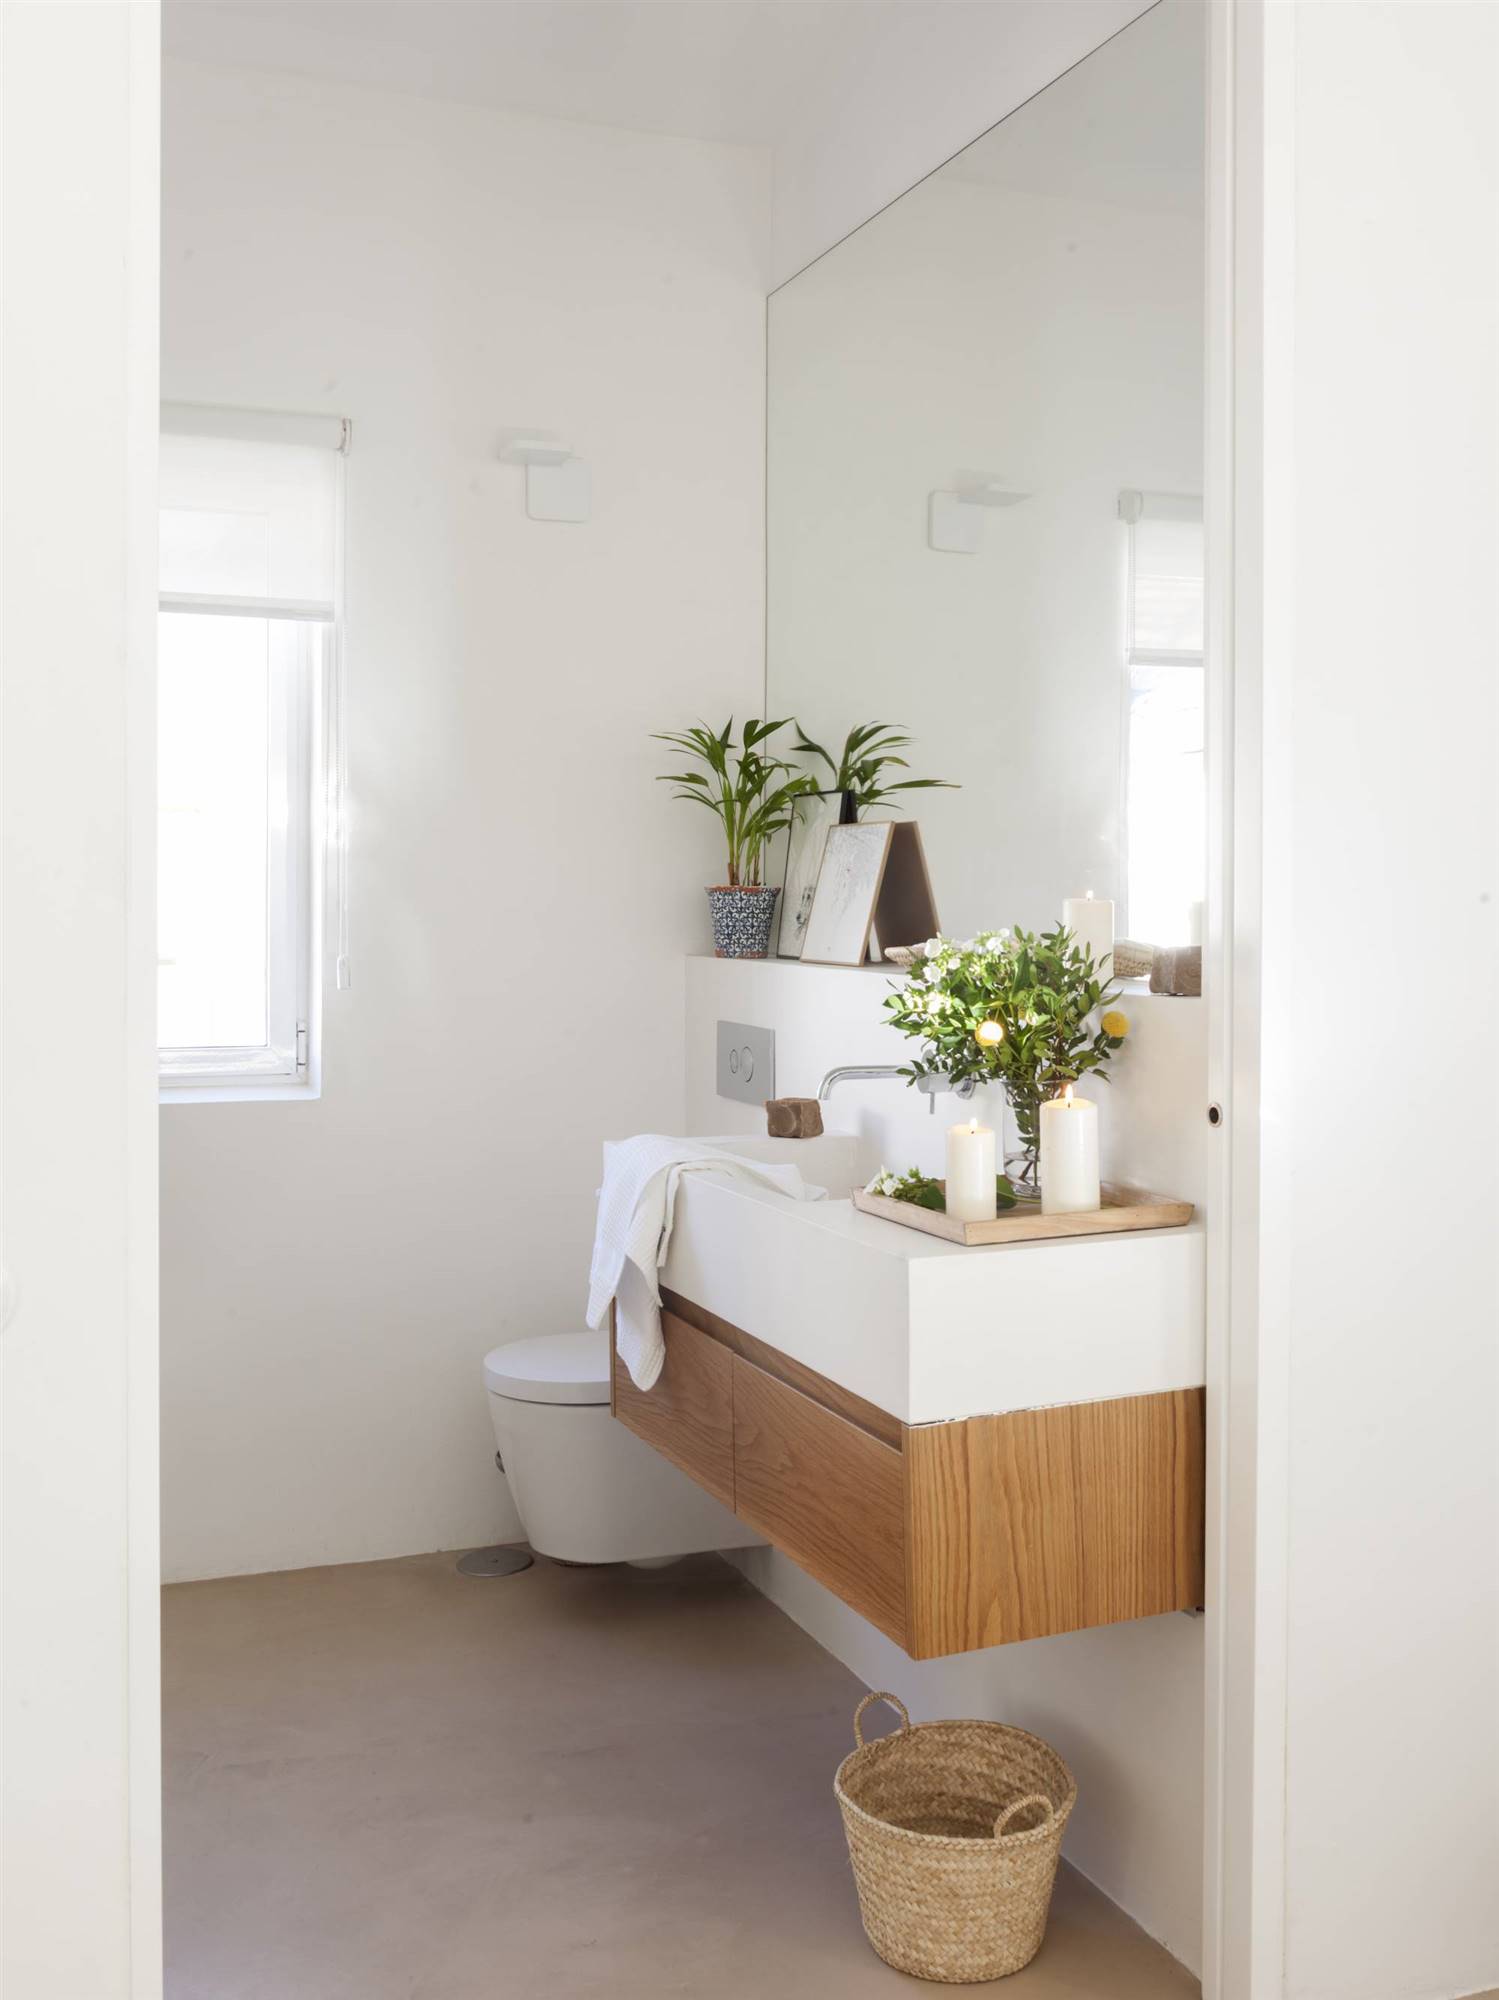 Baño pequeño en blanco con mueble de madera y gran espejo. 